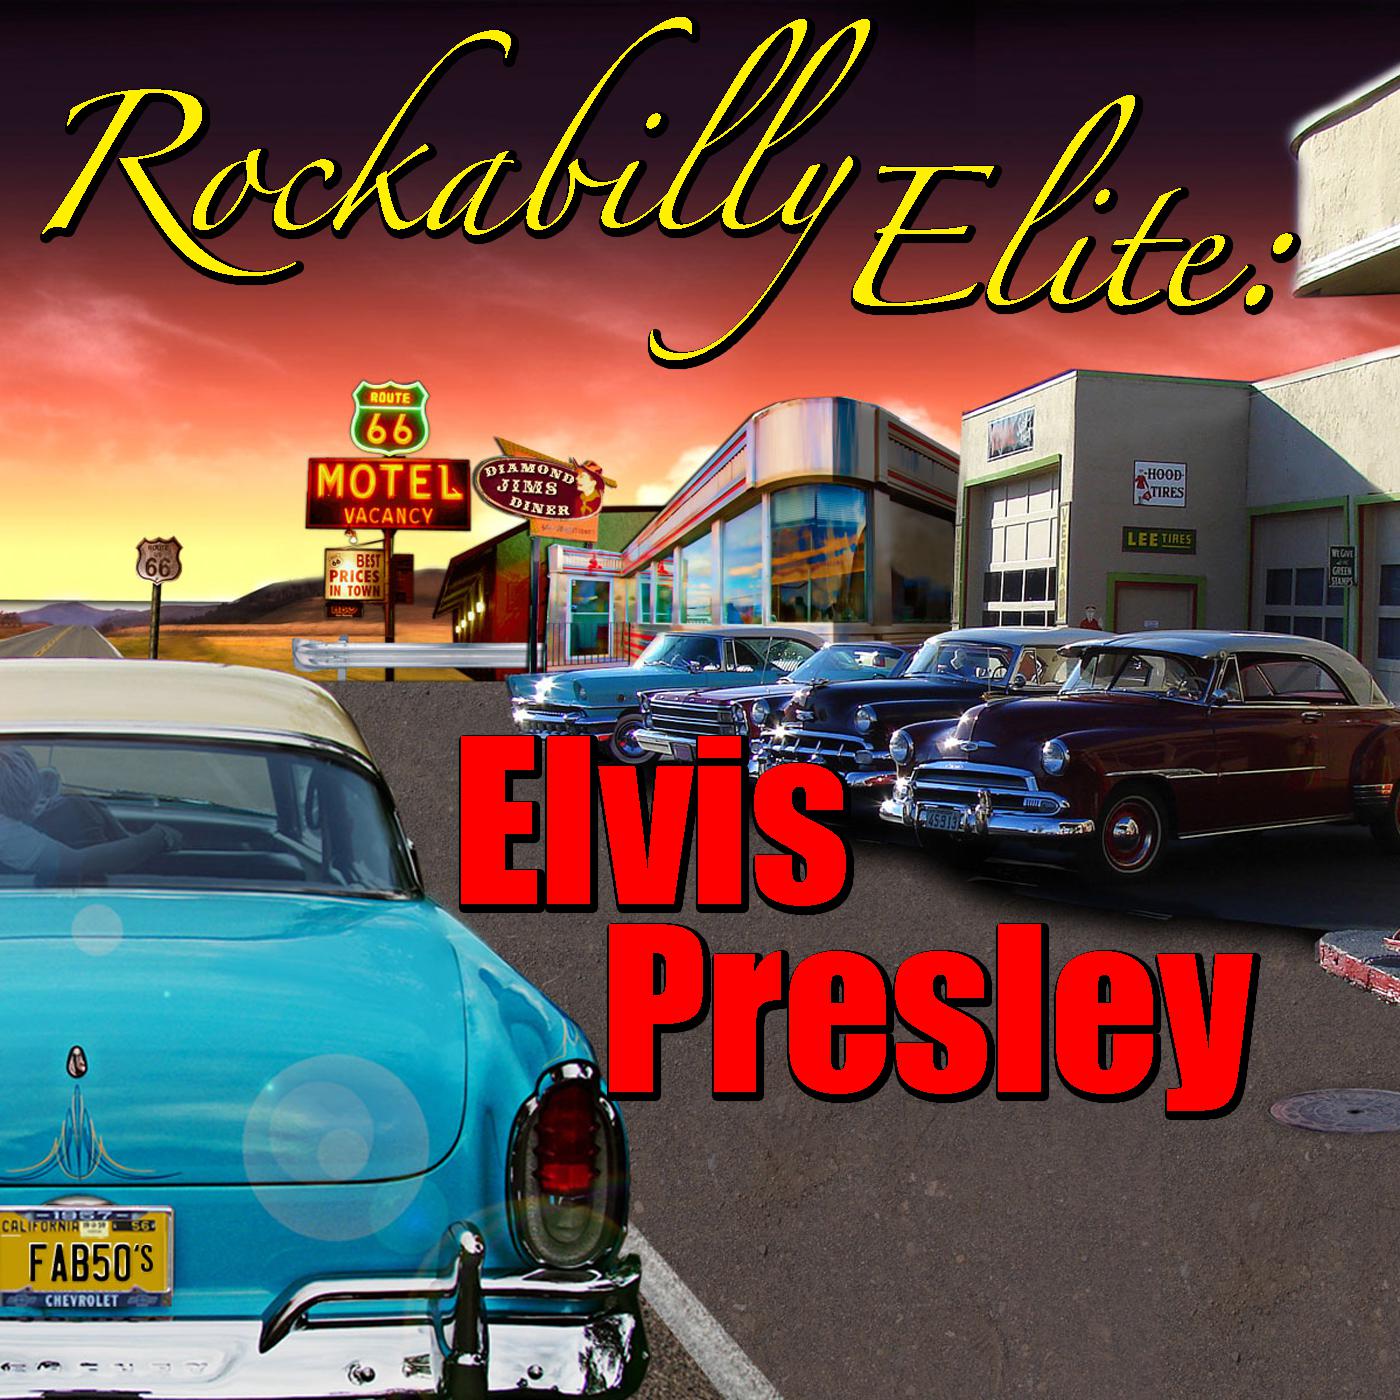 Rockabilly Elite: Elvis Presley